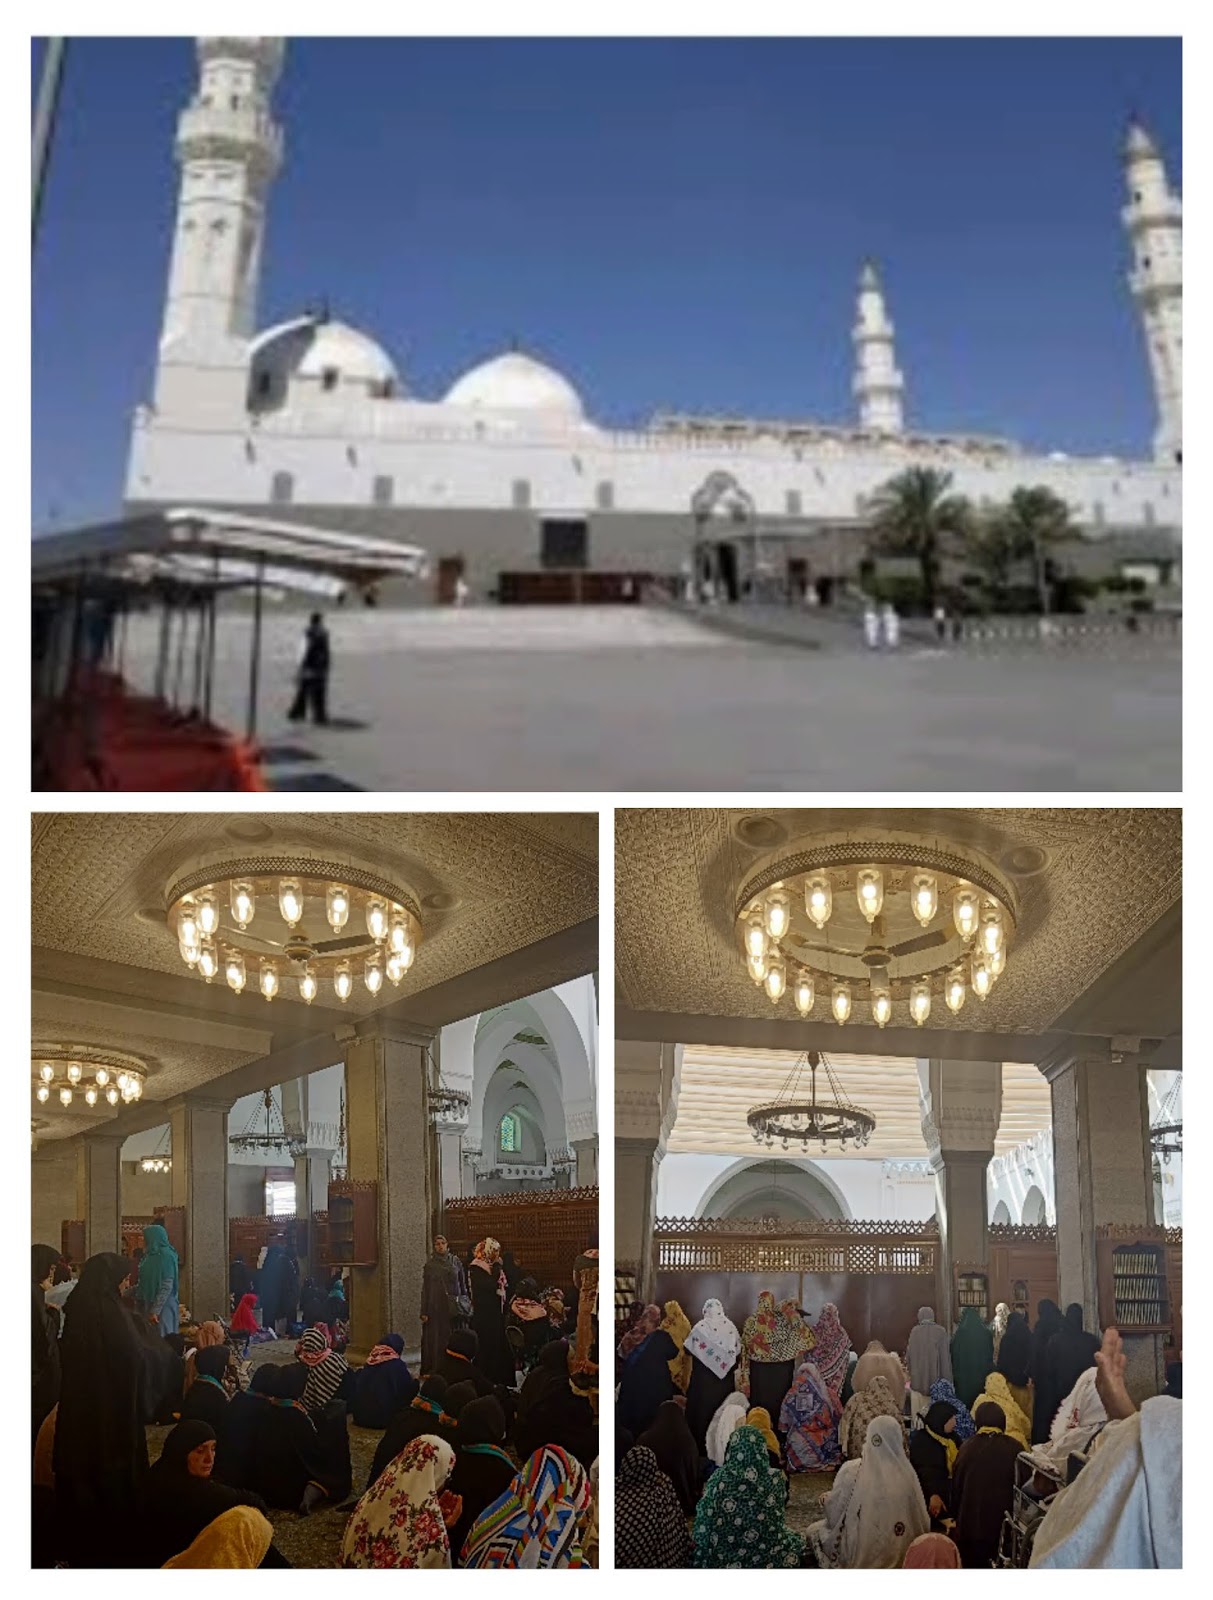 Rasulullah dibina masjid yang oleh